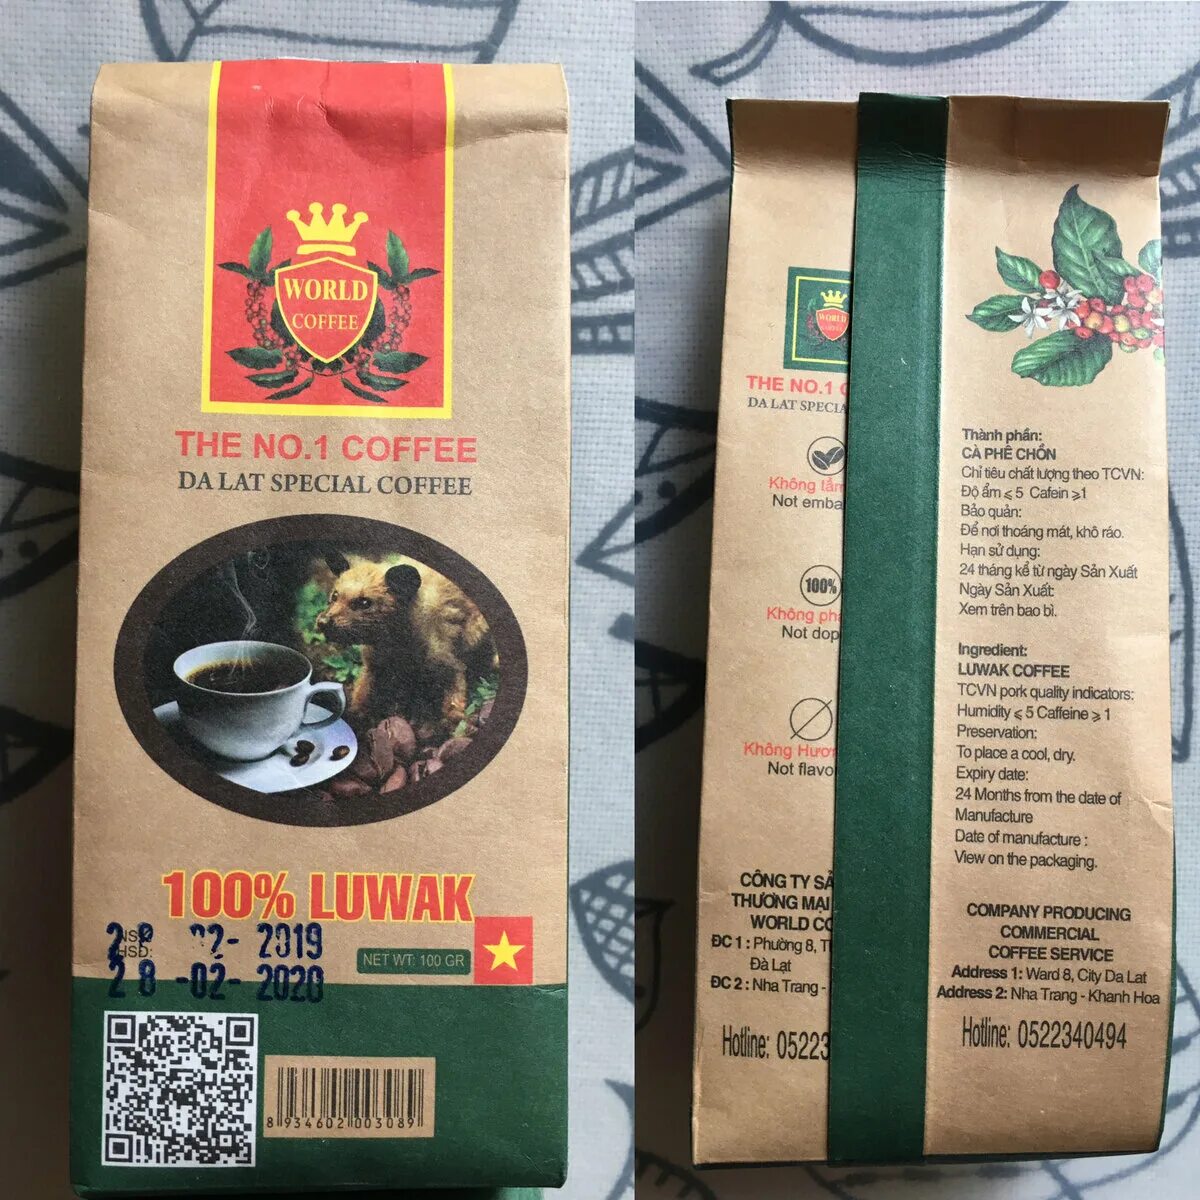 Кофе Special. Вьетнамский кофе huu Khanh. Кофе Вьетнам Dalat, 100 г. Madeo кофе Вьетнам Dalat. Coffees world